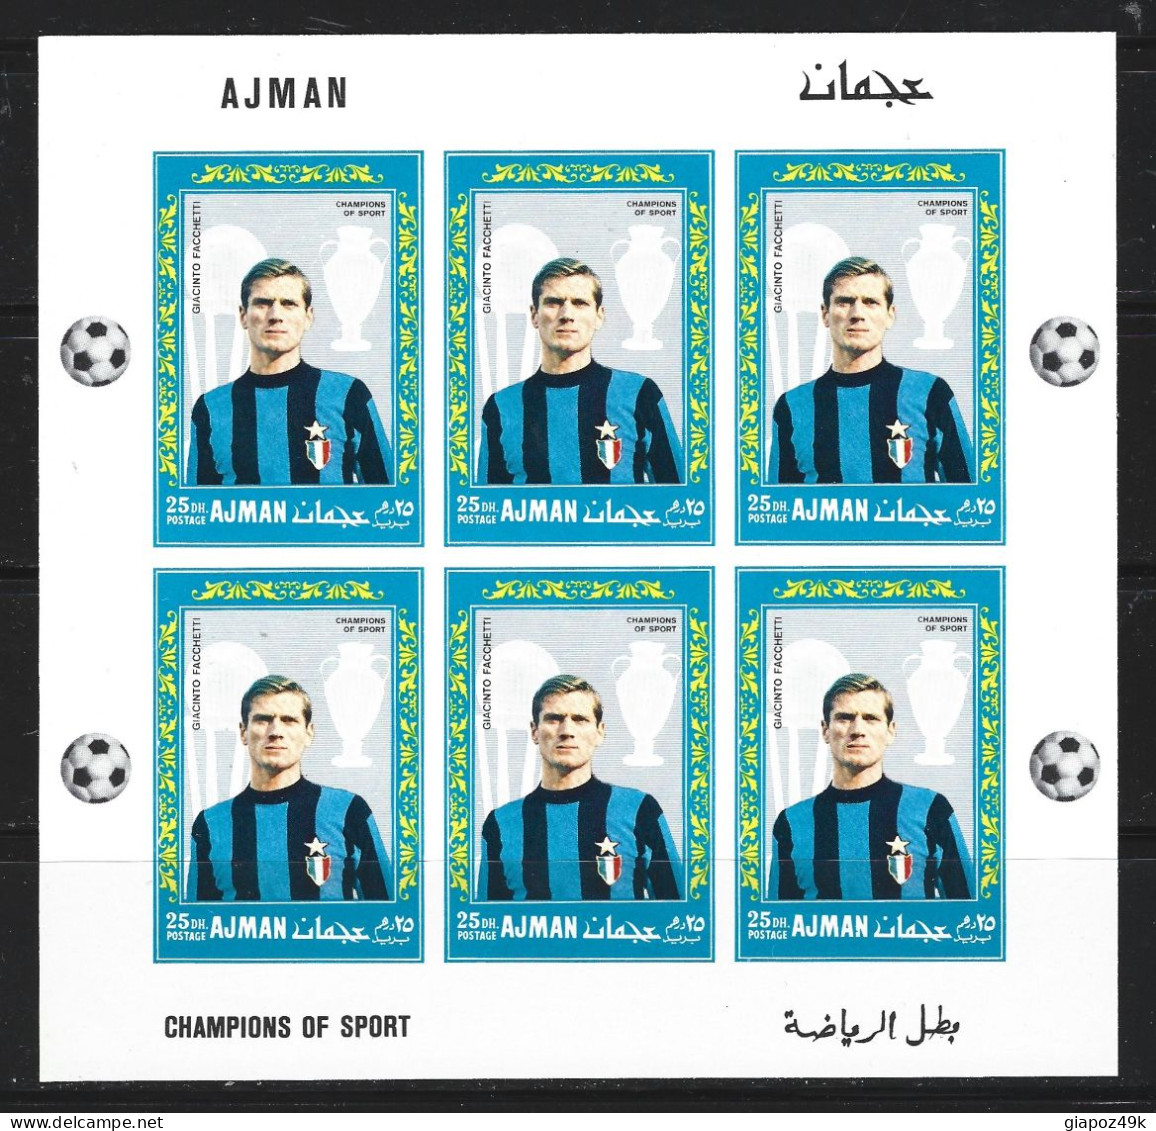 ● AJMAN 1968 ● Calcio ● Mazzola Suarez Corso Domenghini Burgnich Facchetti ● GRANDE INTER ● varietà ️️️ND ● soccer ️️️●